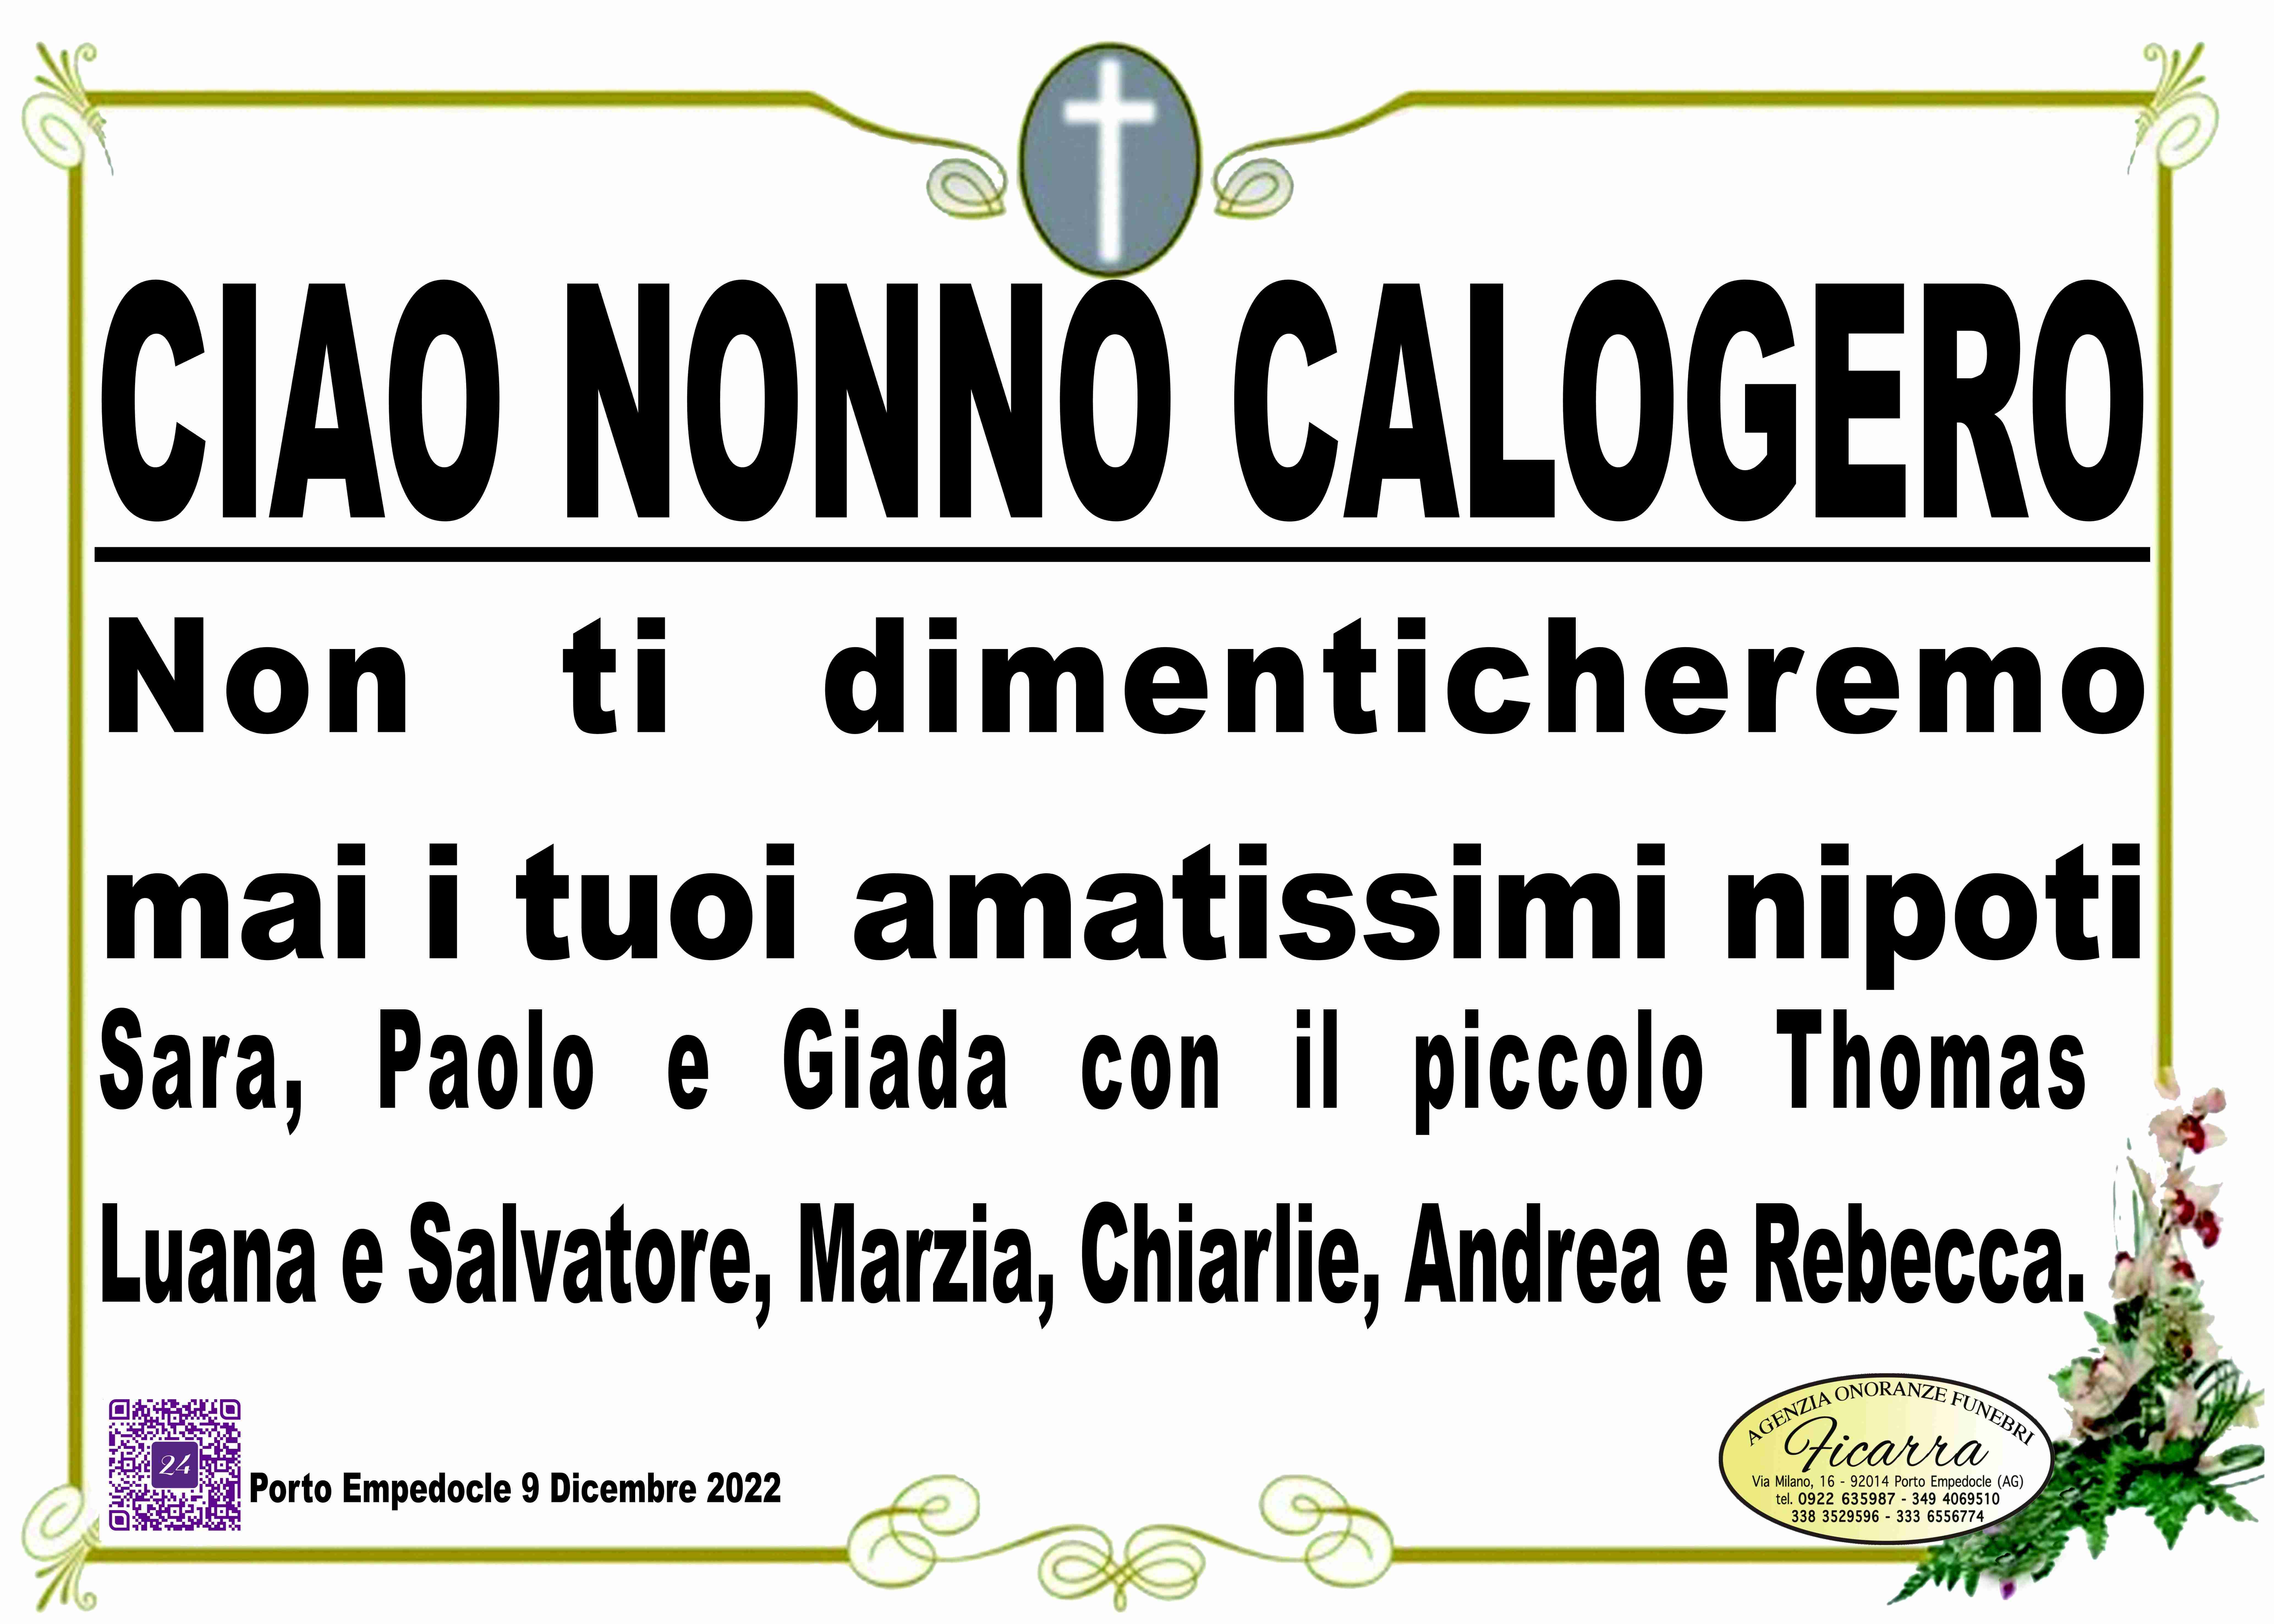 Calogero Iapicone